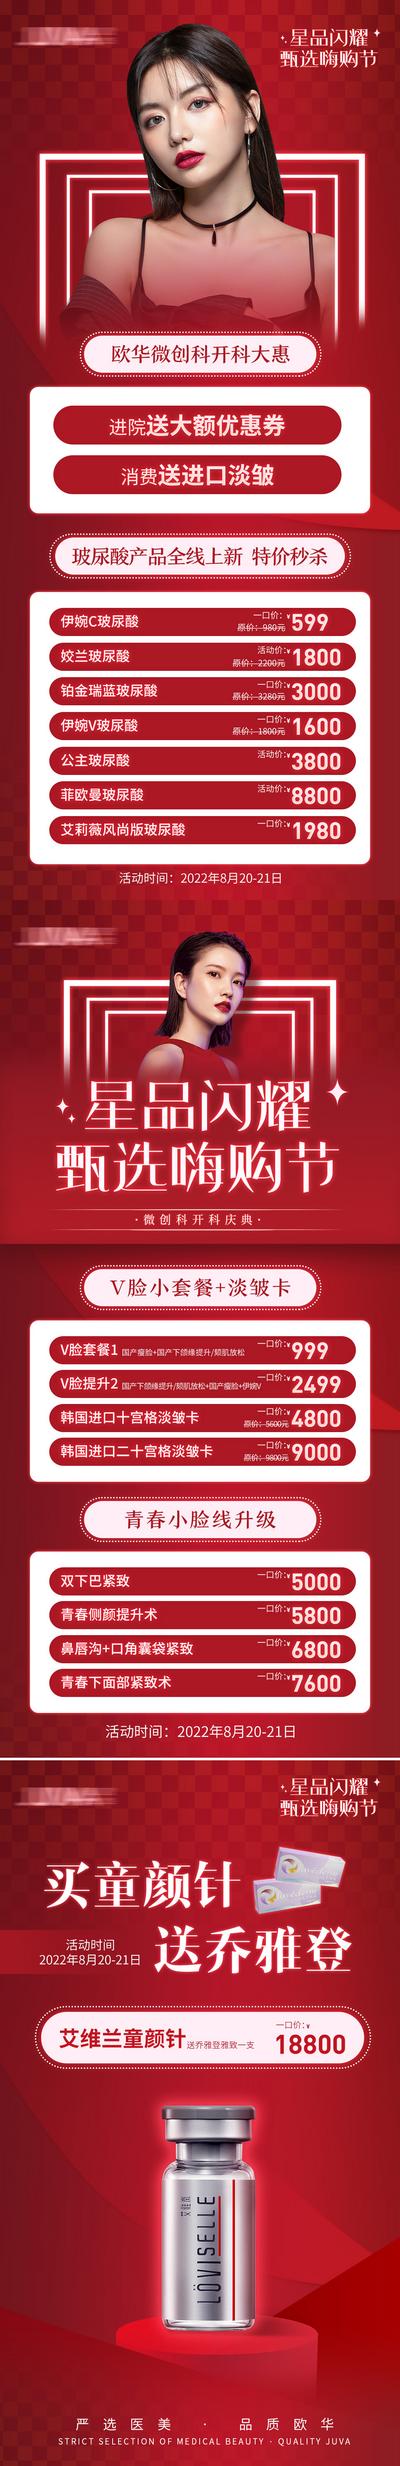 南门网 海报 医美 美容 促销 优惠 红色 盛典 价格 卡项 系列